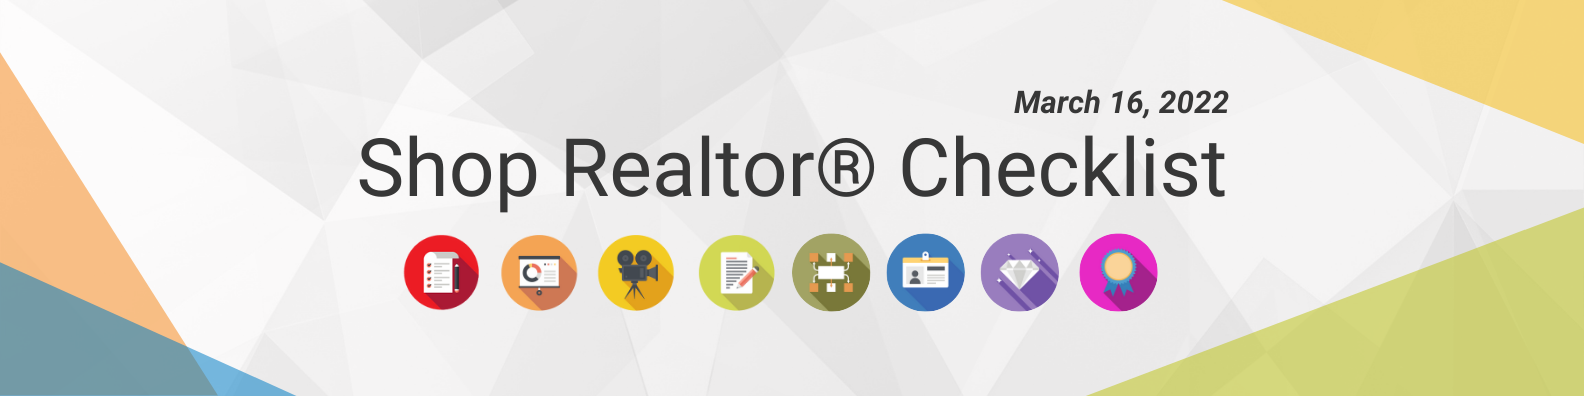 Shop Realtor® Checklist (5)